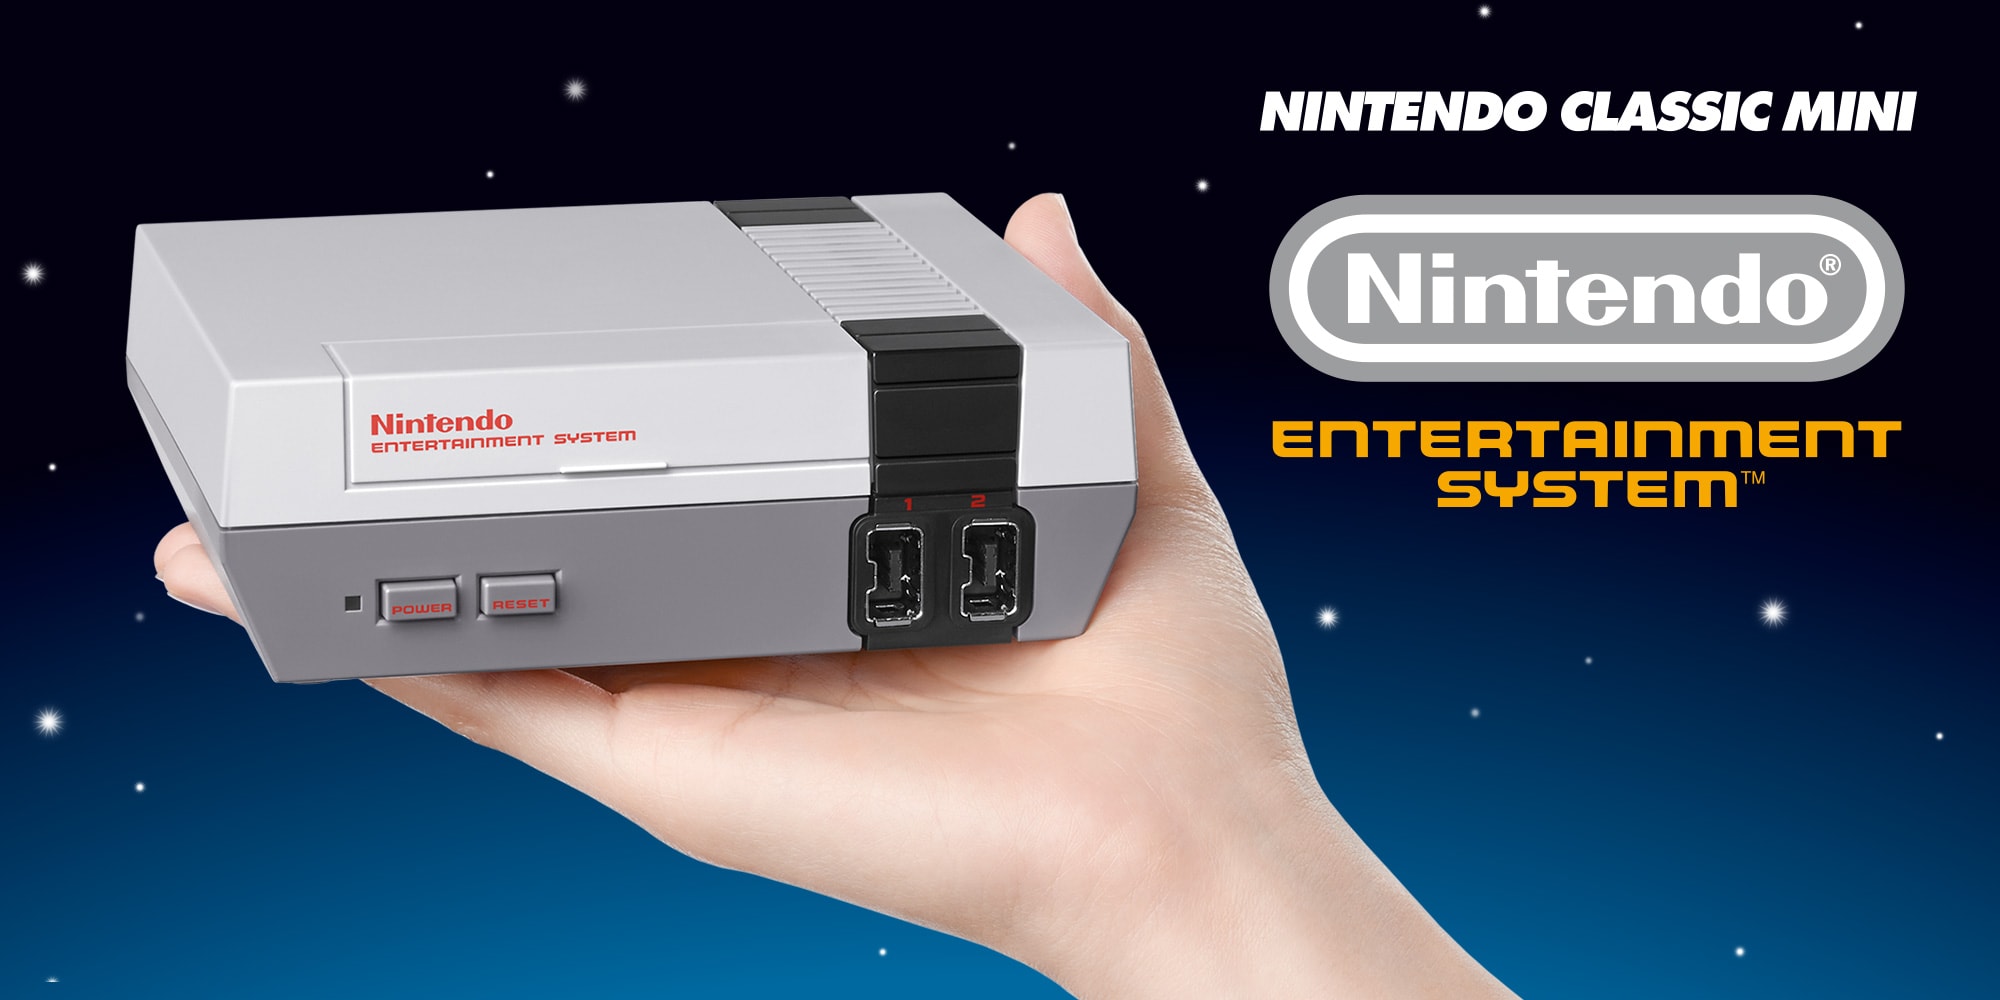 Pre-loaded Games in the Nintendo Mini Nes